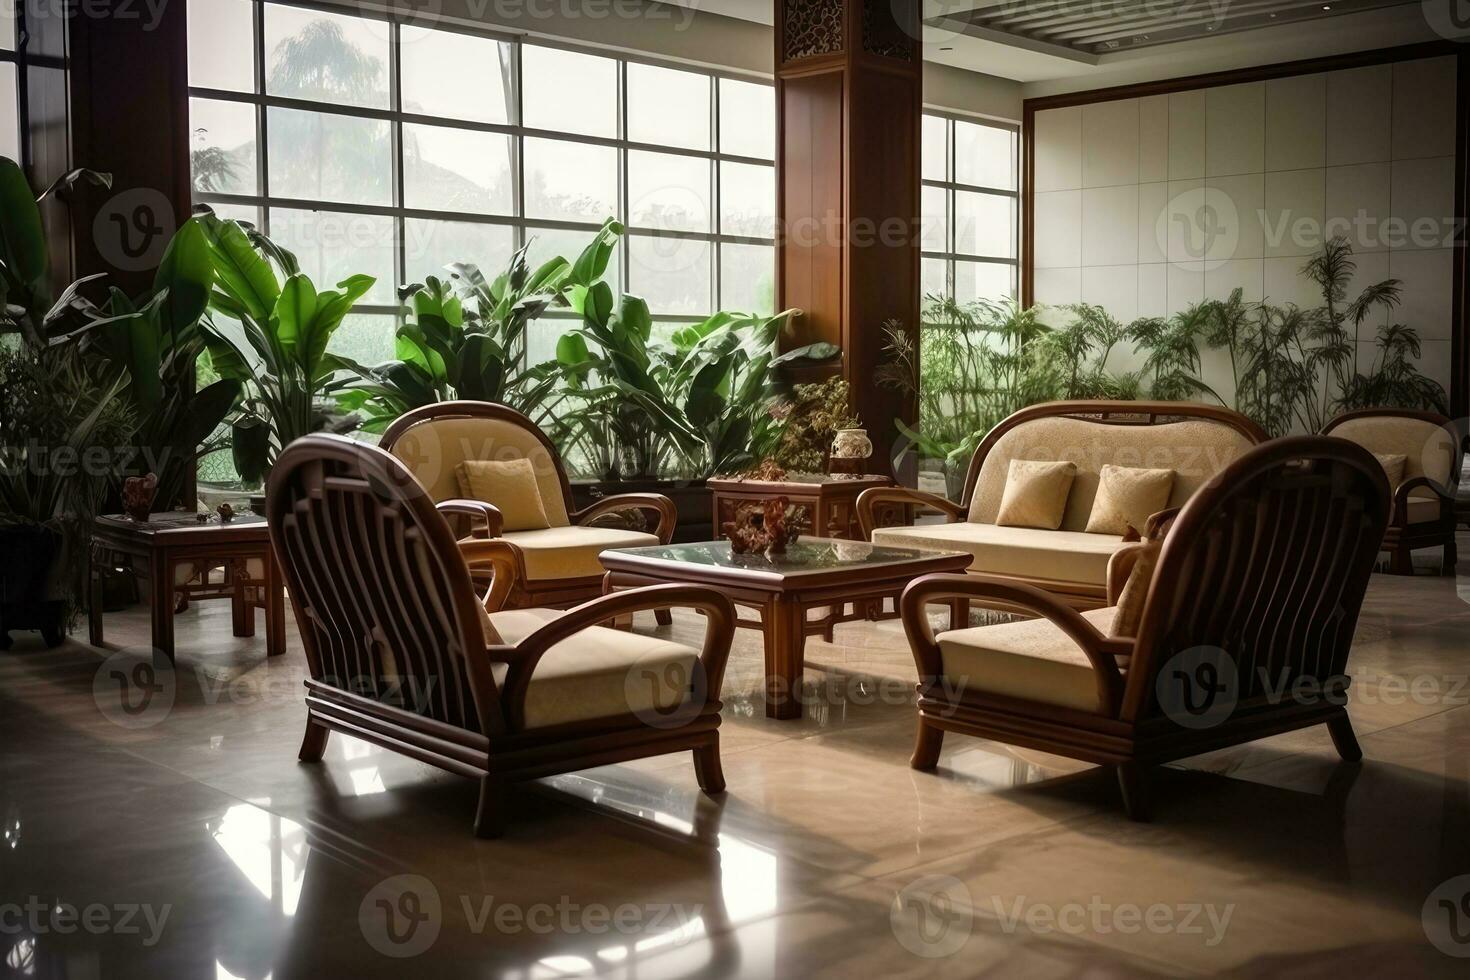 Hotel Empfangshalle mit Chinesisch Stil Möbel professionell Fotografie ai generiert foto